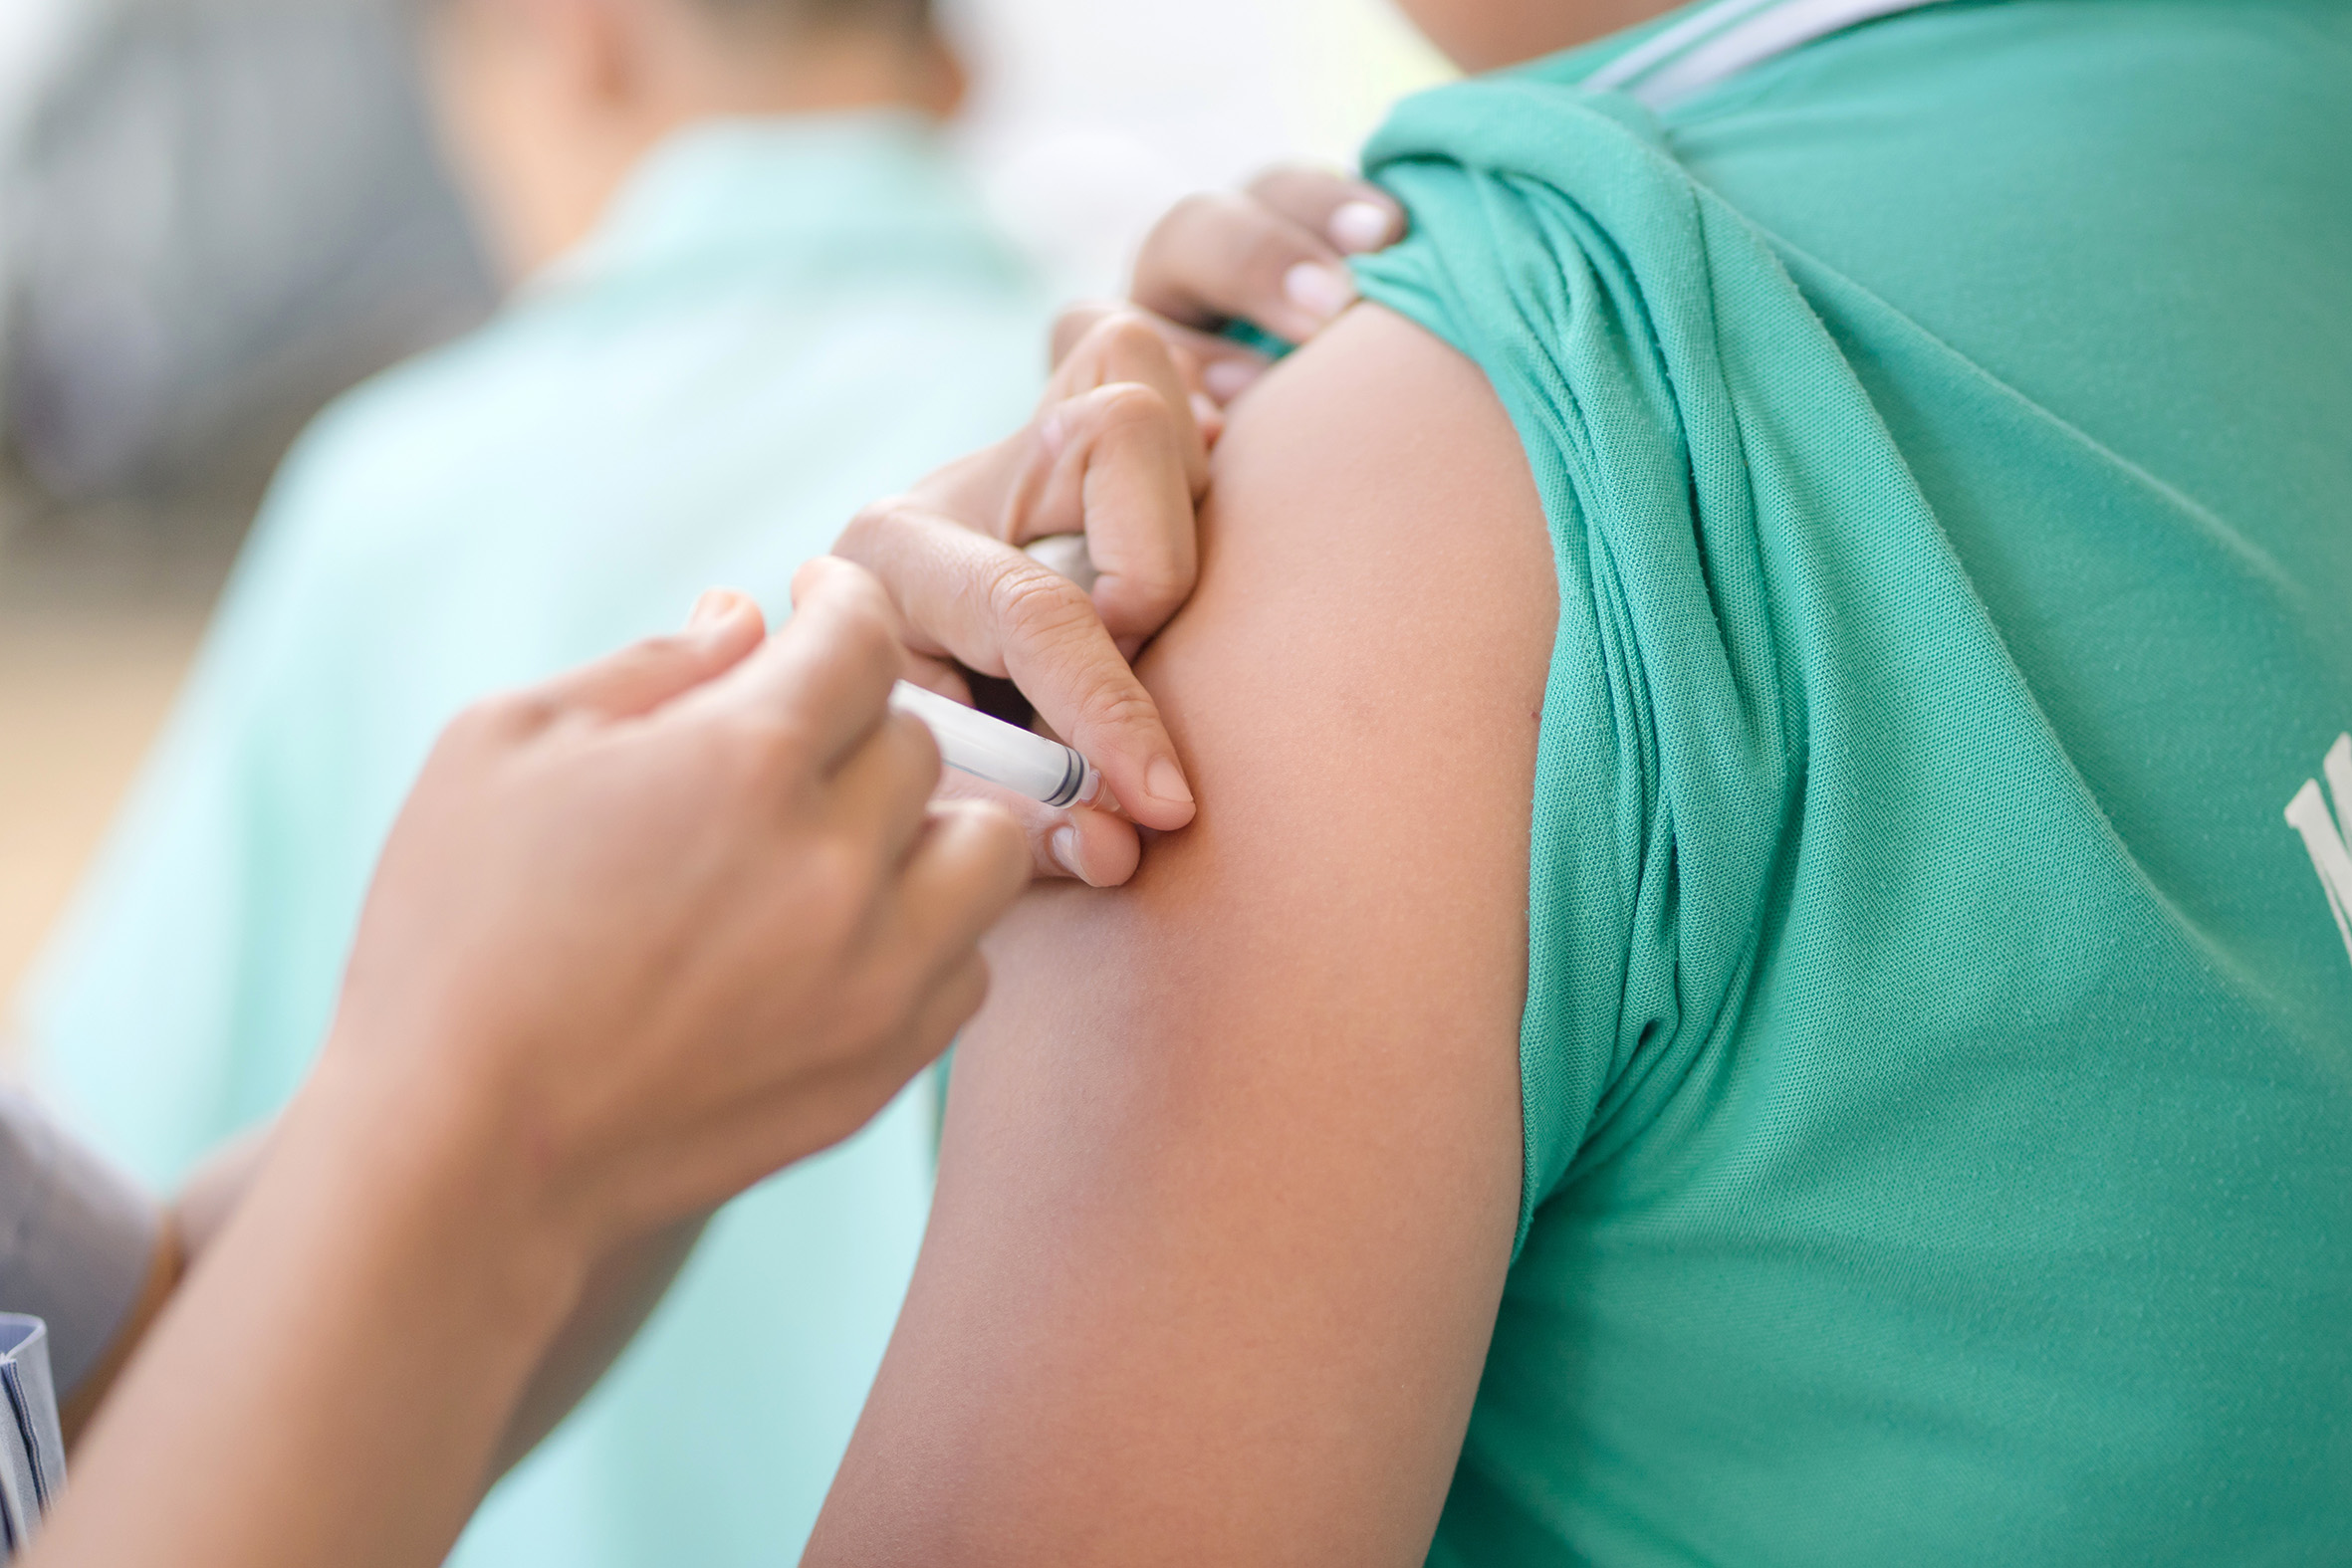 EU Rights Agency criticises Covid-19 vaccine rollout